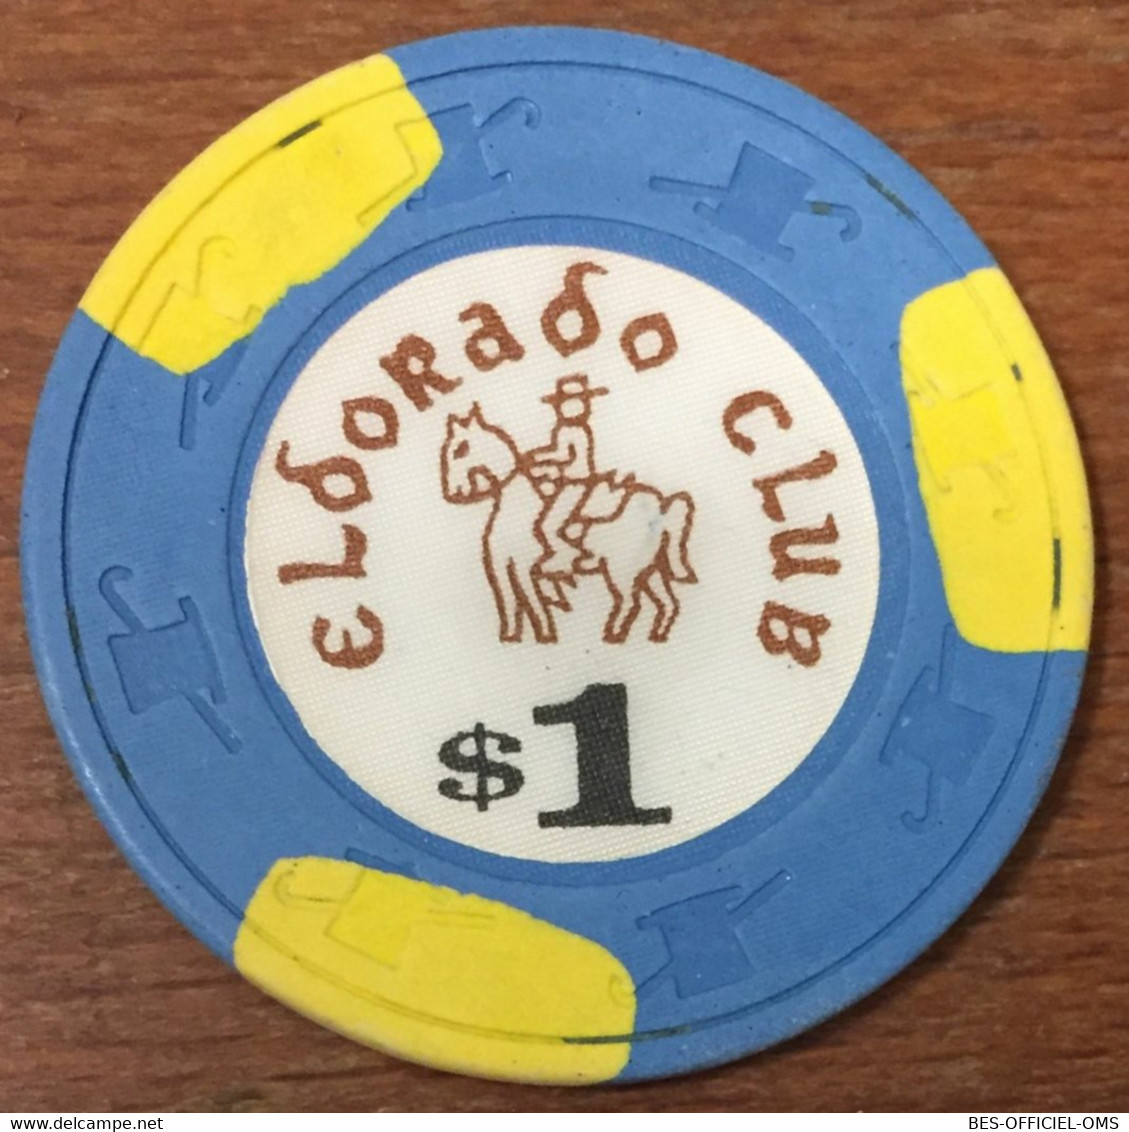 ÉTATS-UNIS USA CALIFORNIE GARDENA ELDORADO CLUB CASINO CHIP $ 1 JETON TOKENS COINS - Casino